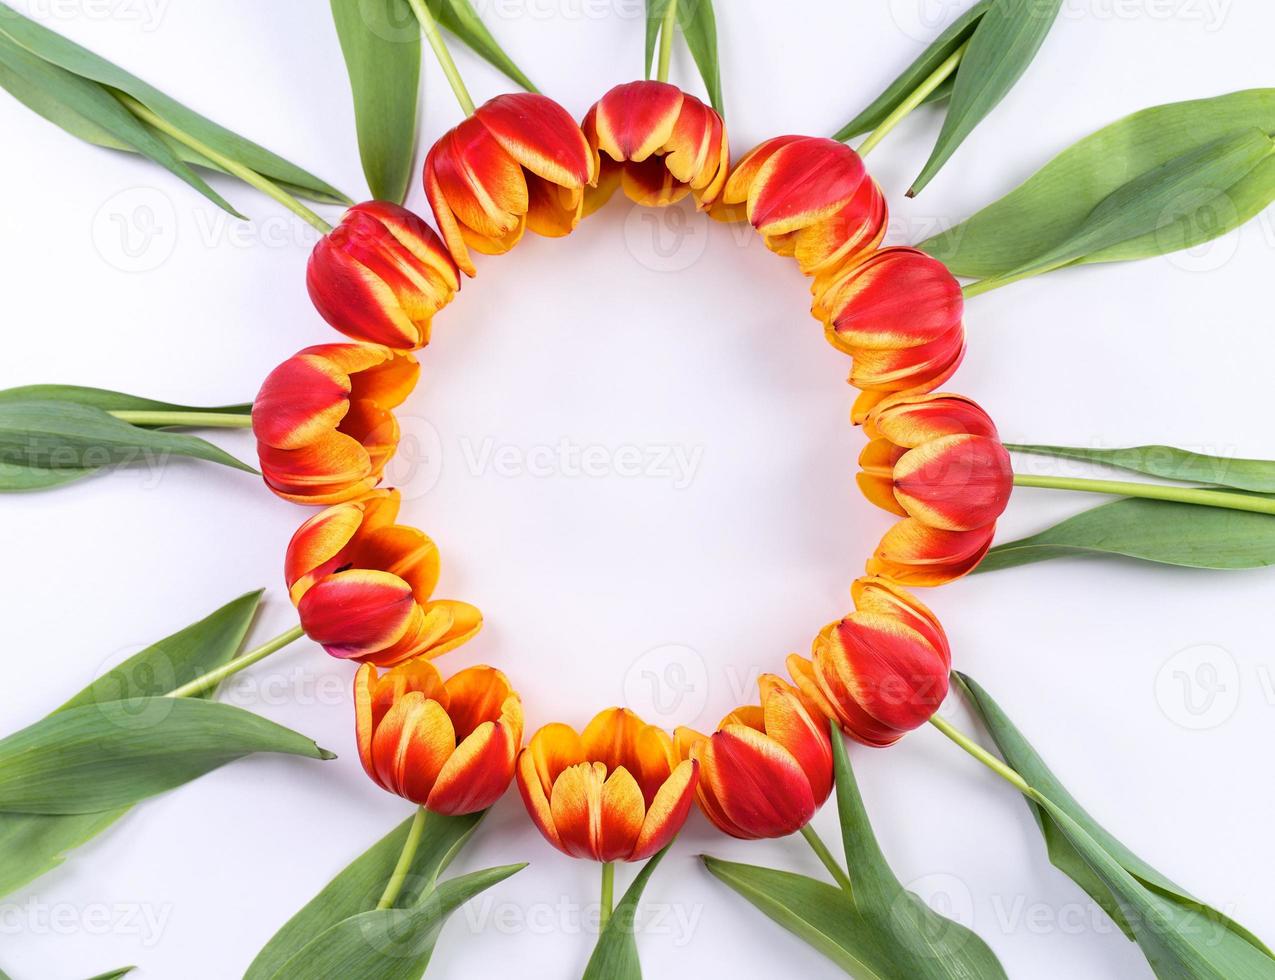 fond de fête des mères, bouquet de fleurs de tulipe - beau bouquet rouge, jaune isolé sur tableau blanc, vue de dessus, mise à plat, concept de conception de maquette. photo